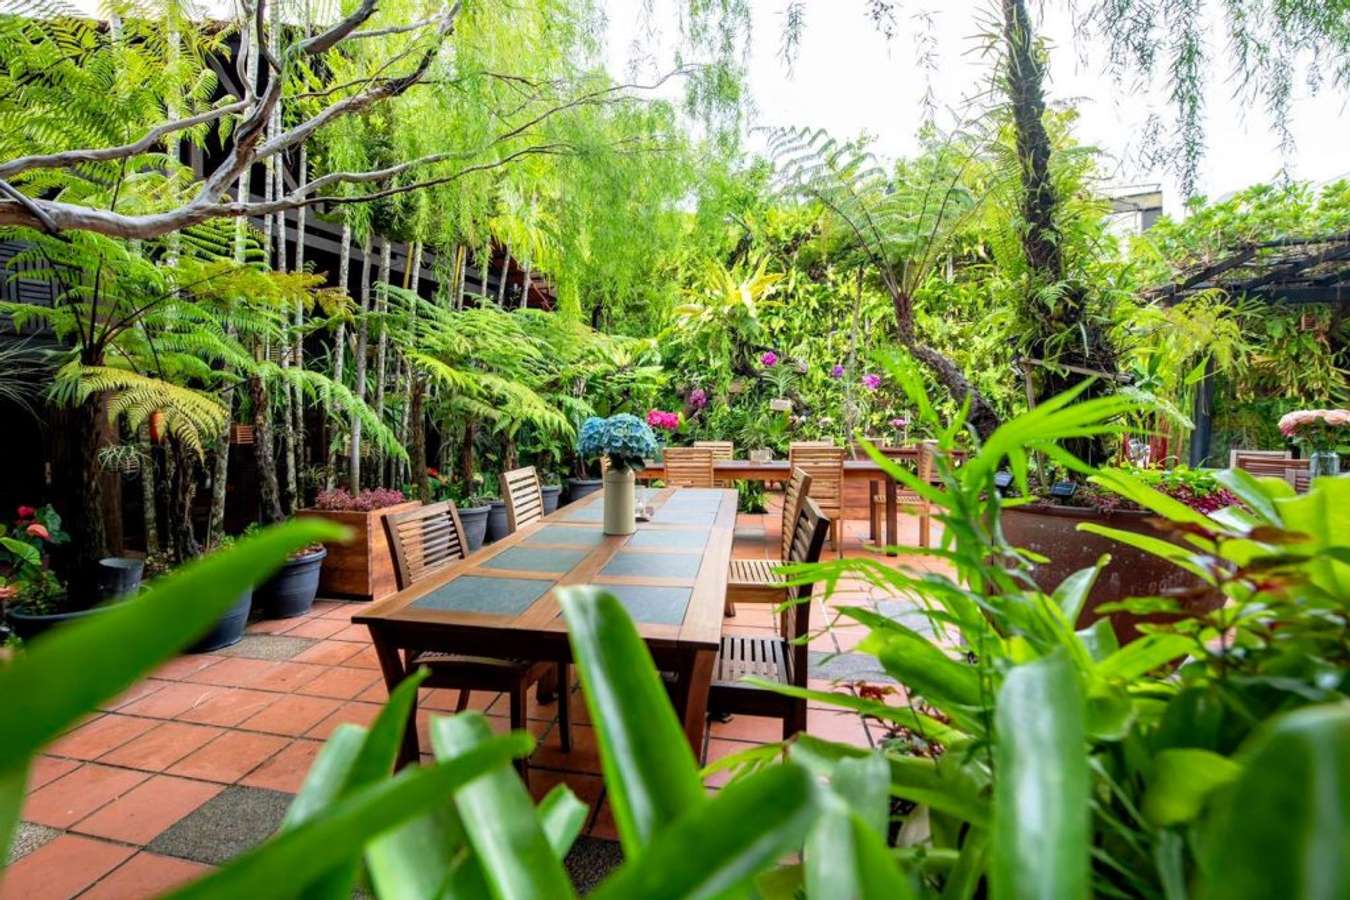 Ferringhi Garden Restaurant - Things to do in Penang